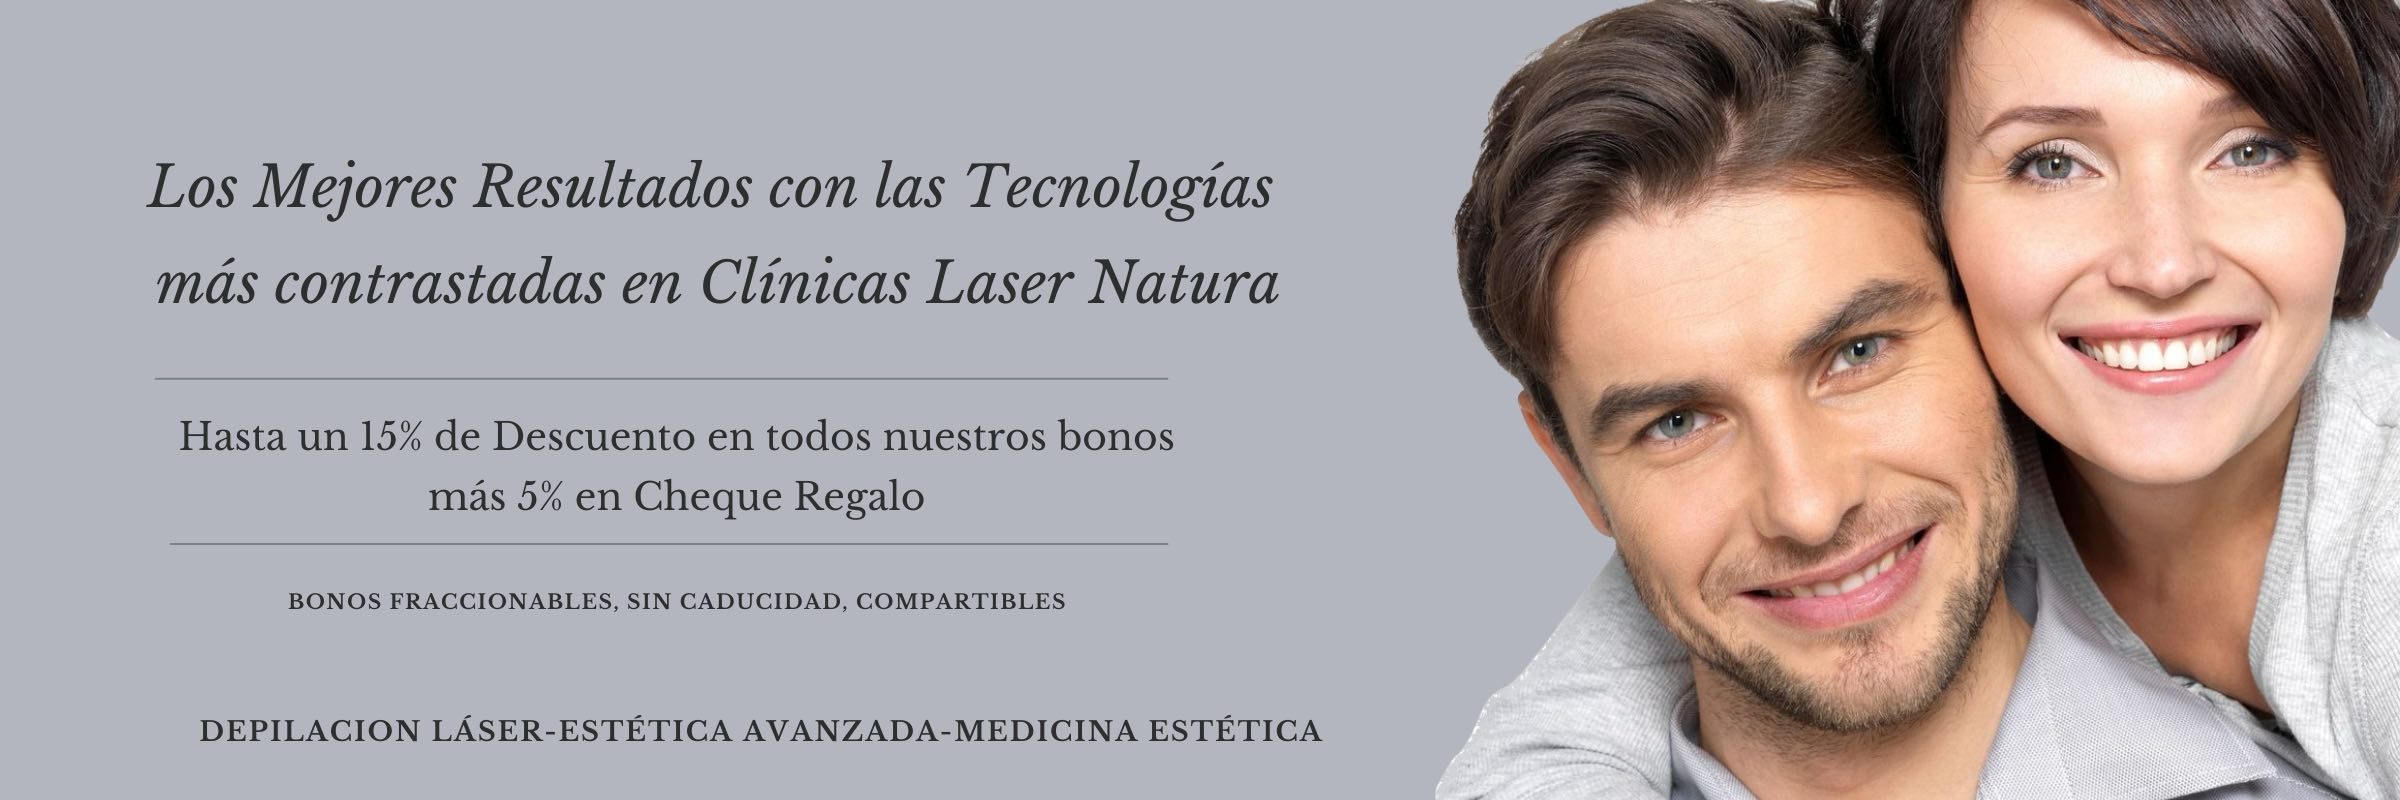 clinica depilacion laser y estetica madrid